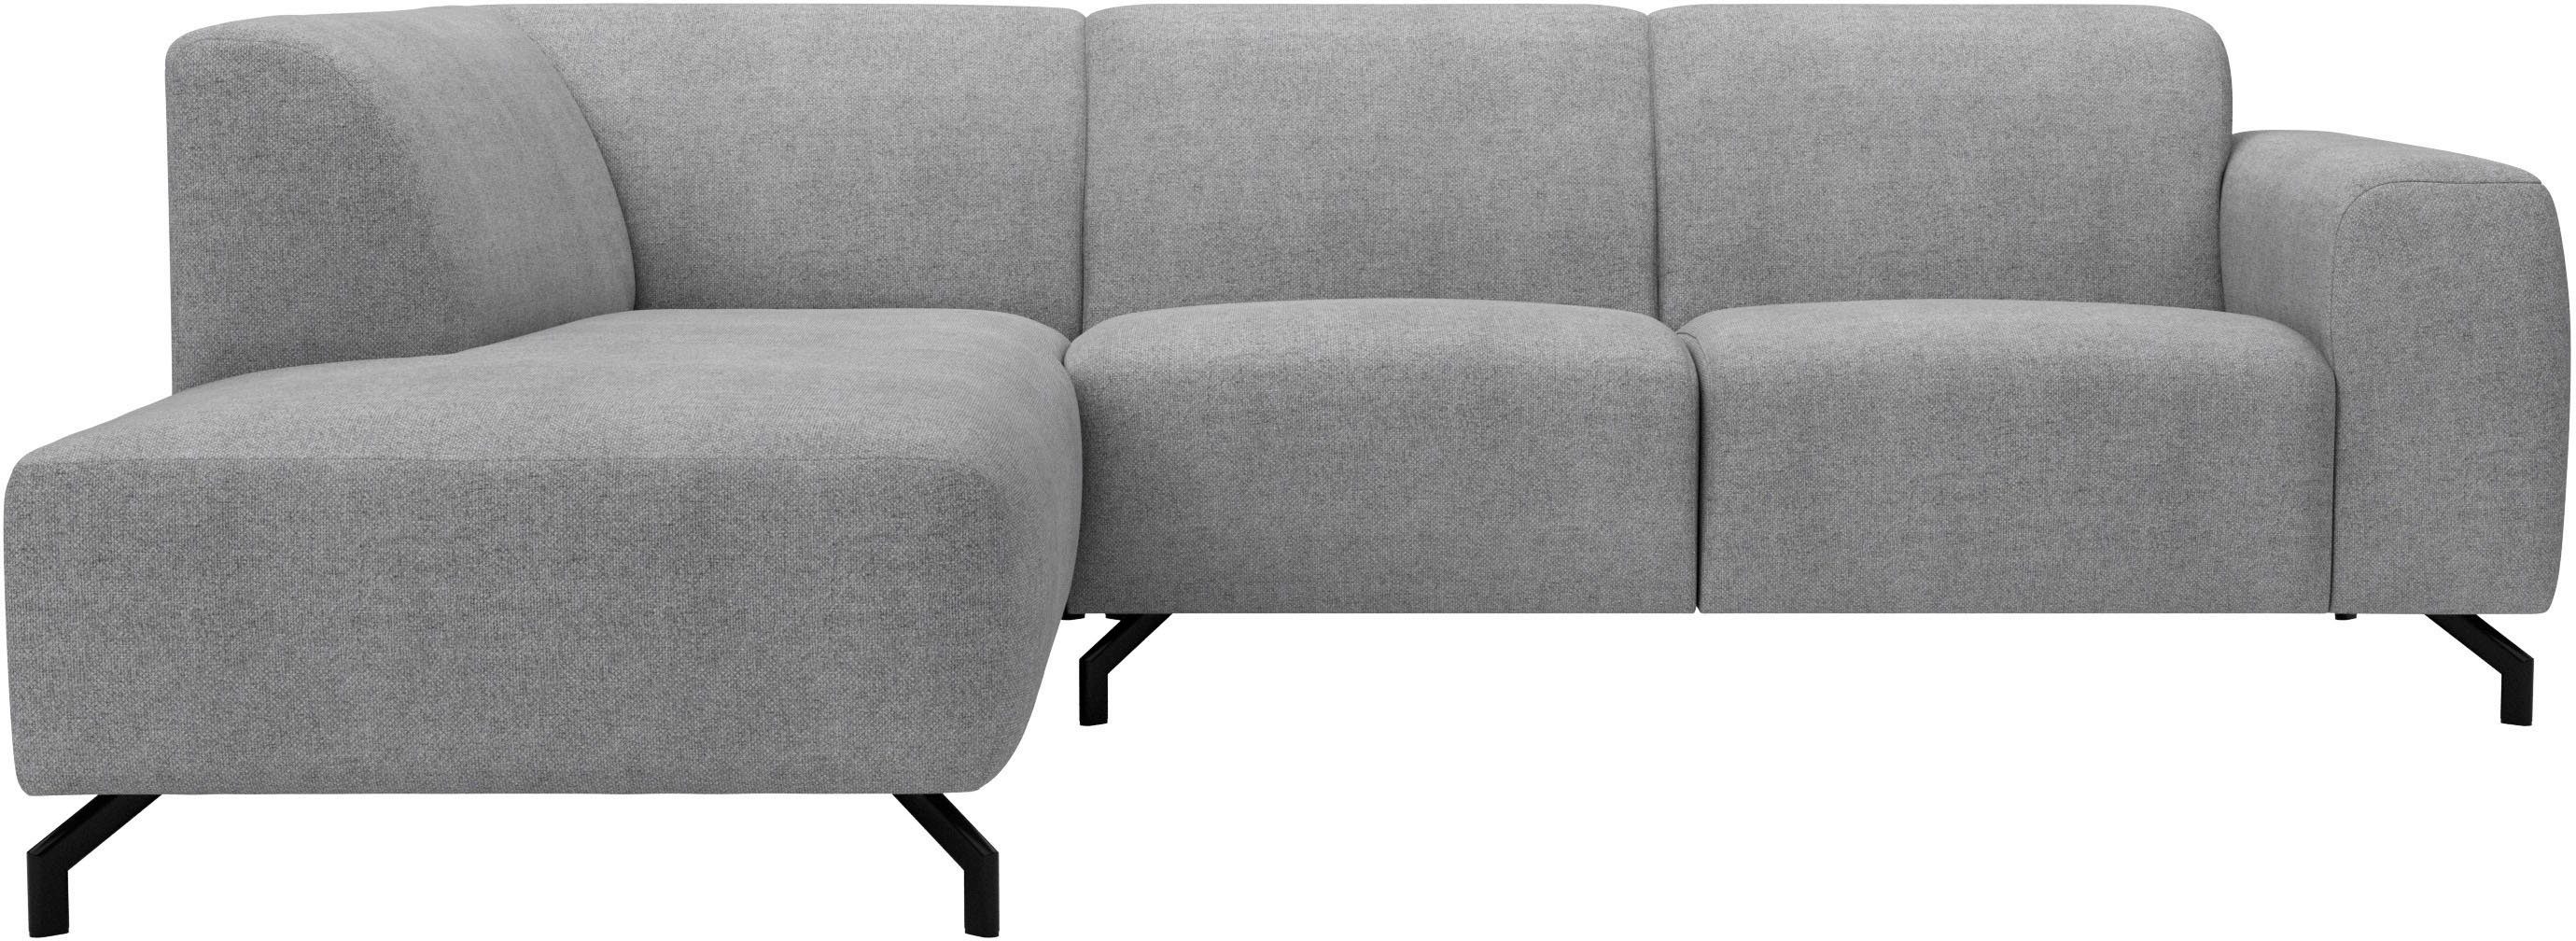 Ecksofa Bezugsqualitäten unterschiedlichem Style of Oleandro, mit verschiedenen Sitzkomfort, in Places